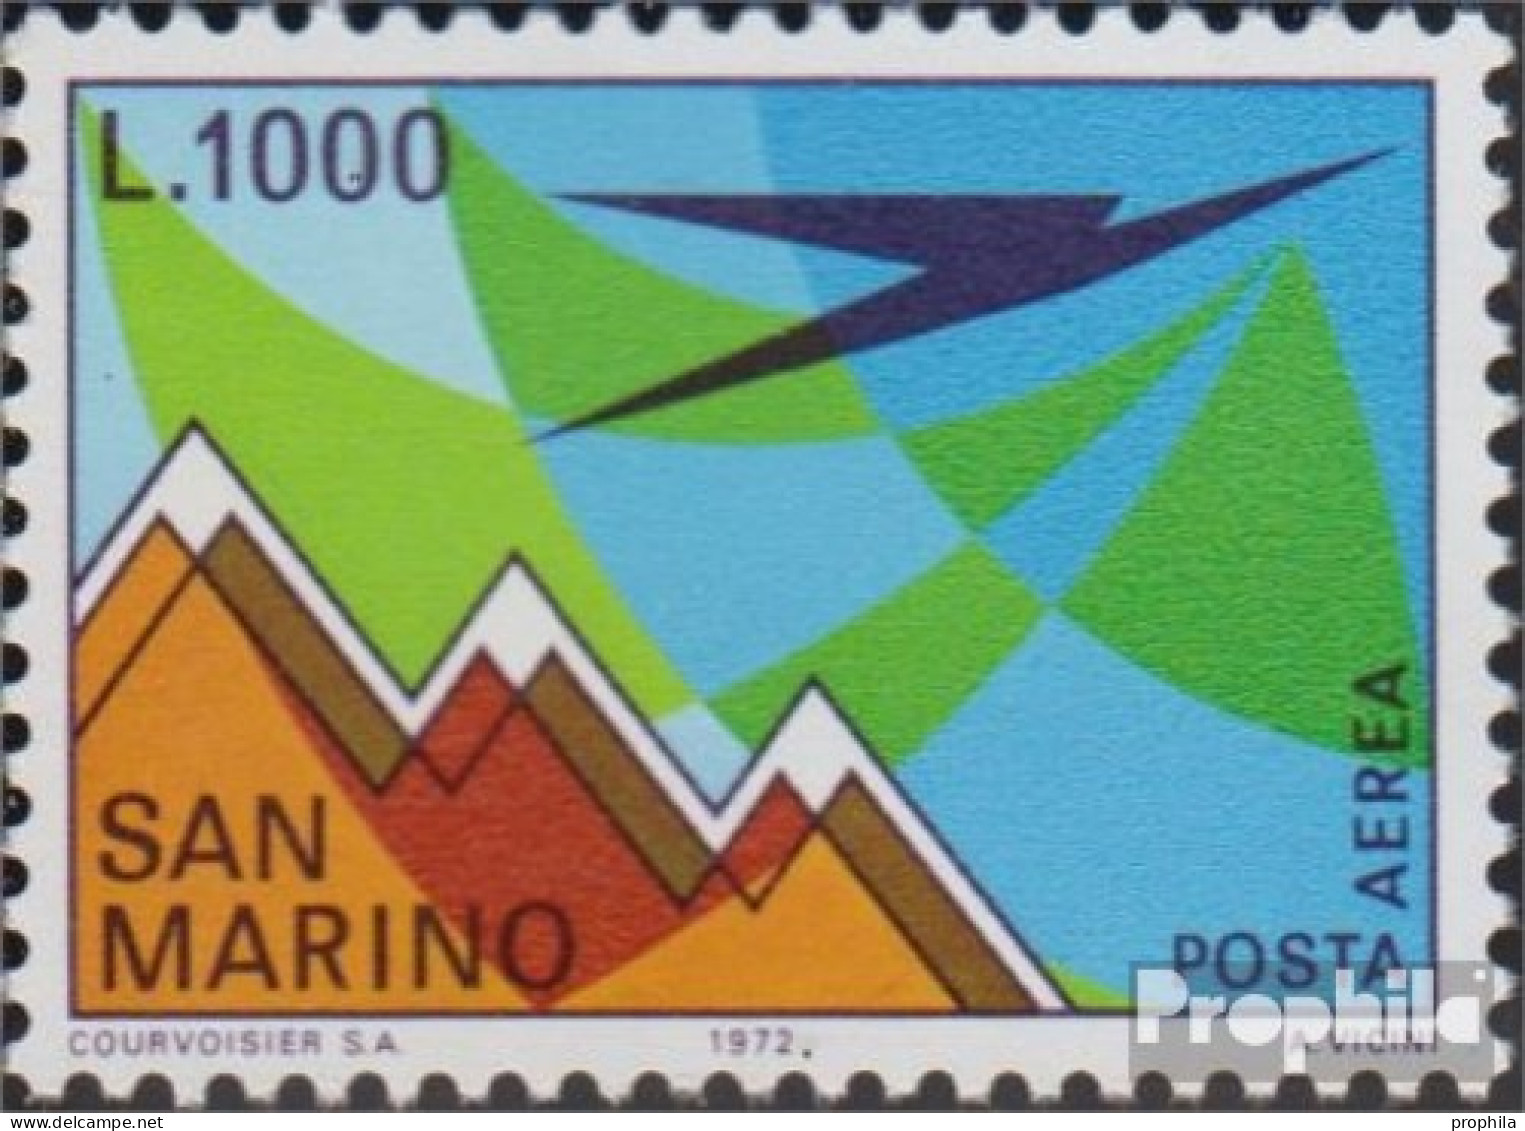 San Marino 1016 (kompl.Ausg.) Postfrisch 1972 Flugpostmarke - Ungebraucht